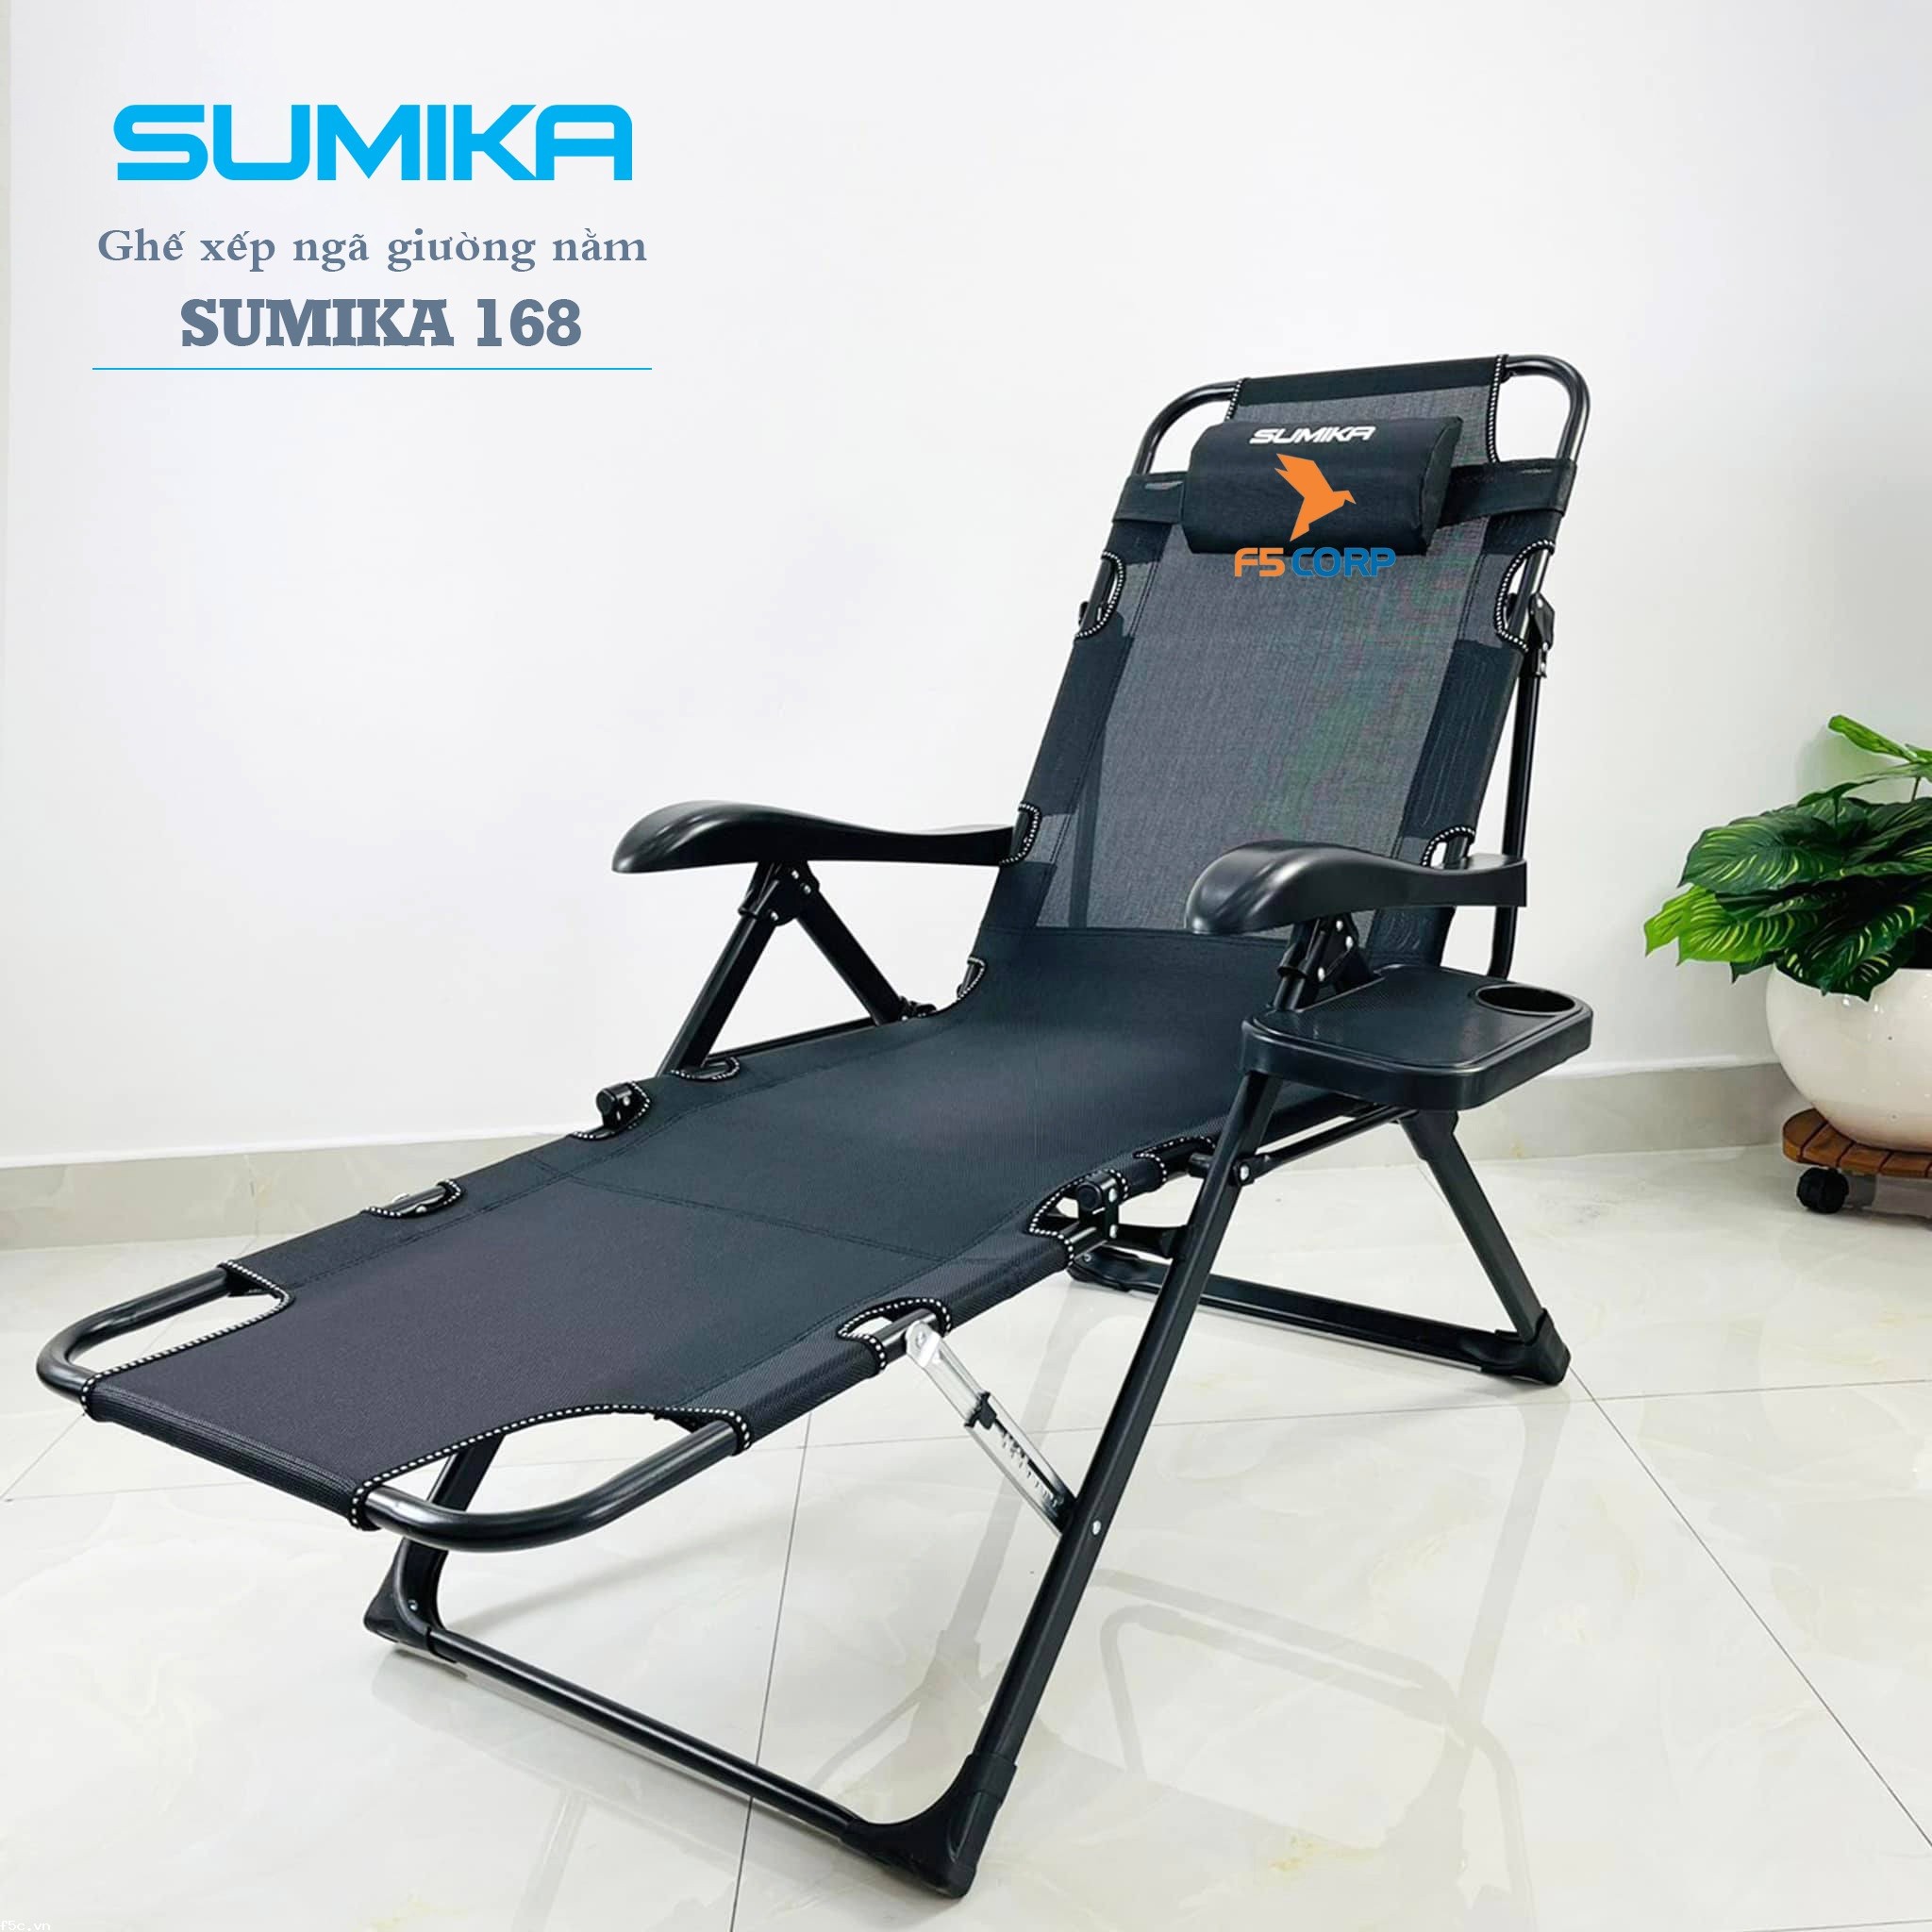 Ghế xếp ngã thành giường tiện lợi Sumika 168, tải trọng 300kg